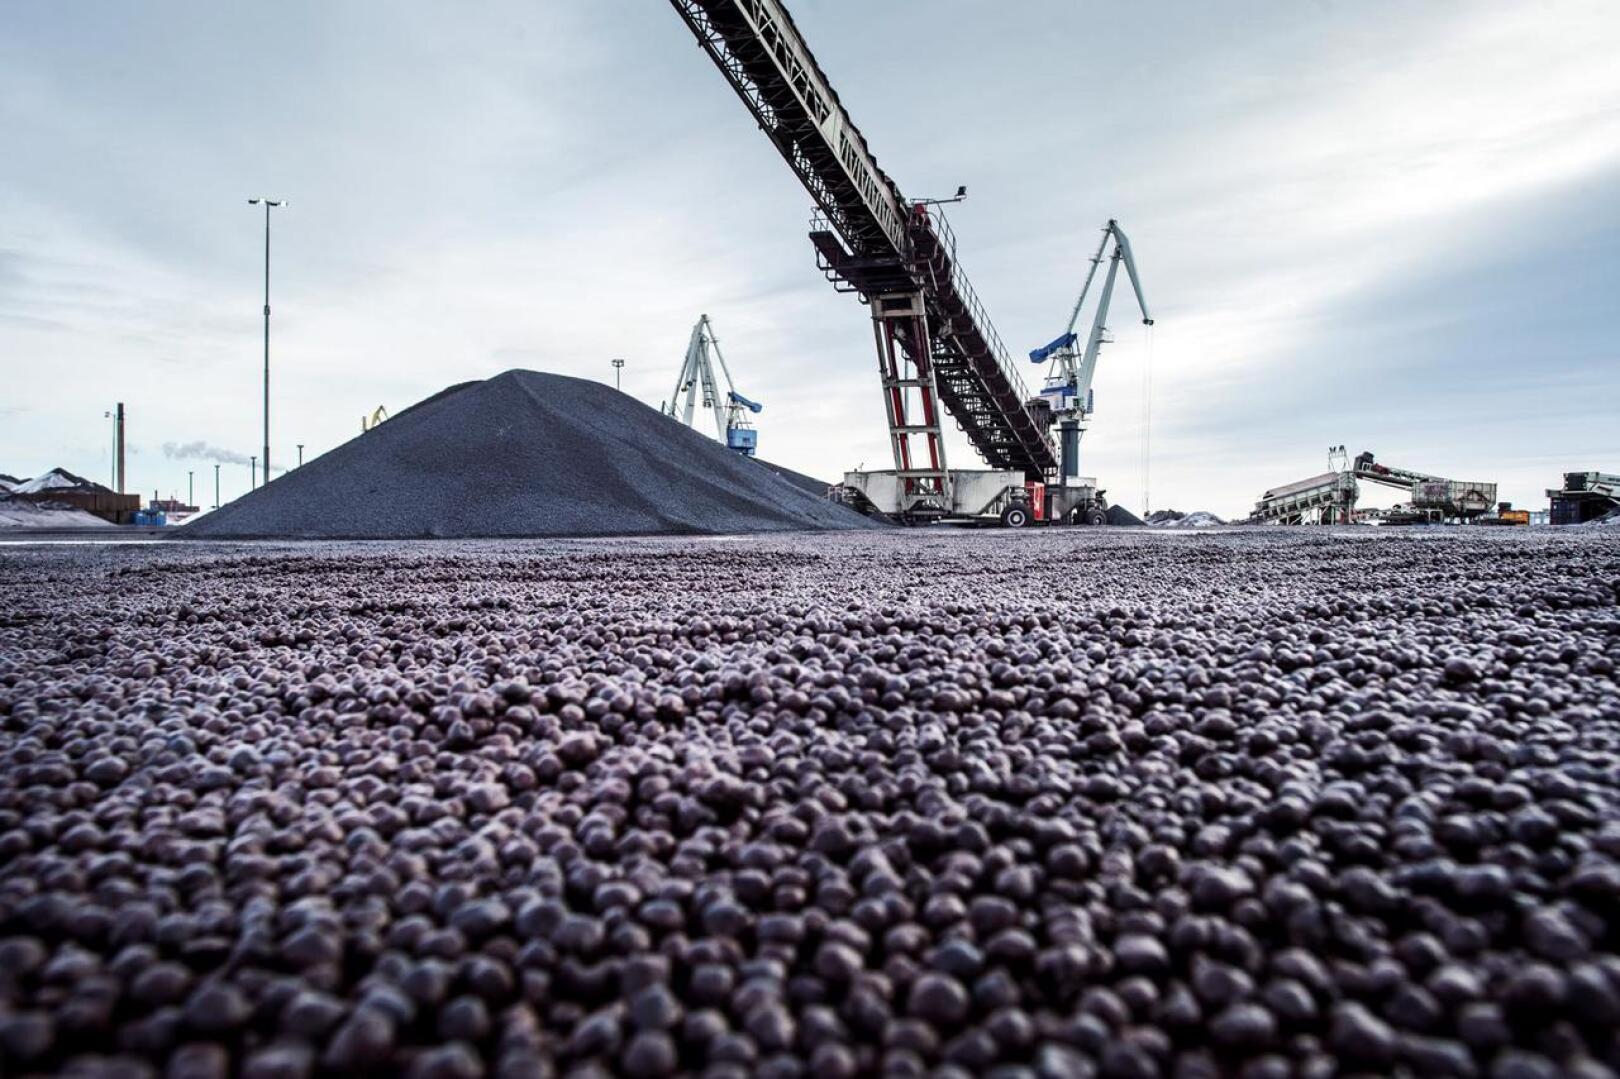 Parasta aikaa Kokkolan satama hakee lupaa varastoida jopa miljoona tonnia kivihiiltä vuodessa.